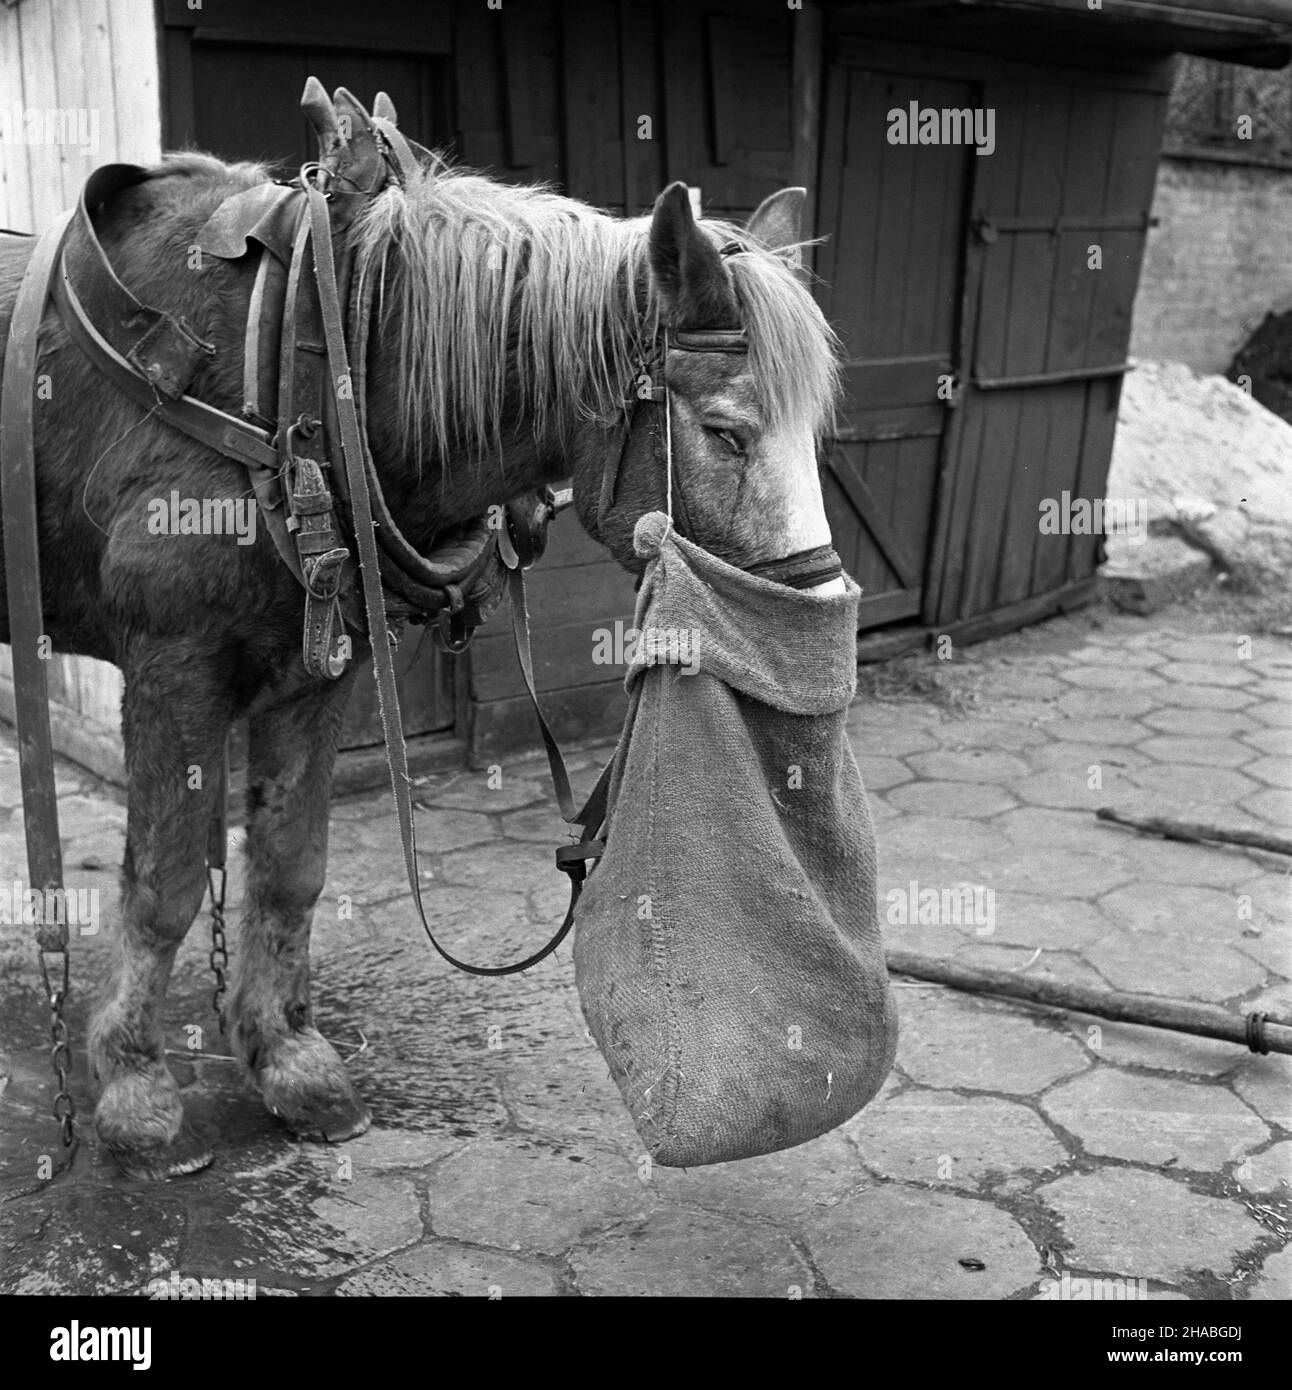 Warszawa, 1969-10-01. Konie na targu ¿ywnoœci w Warszawie. Nz. zmêczony, wynêdznia³y koñ. mb  PAP/Boles³aw Miedza    Dok³adny dzieñ wydarzenia nieustalony.      Warsaw, Oct. 1, 1969. Horses at a food market in Warsaw. Pictured: a tired, haggard horse.  mb  PAP/Boleslaw Miedza Stock Photo